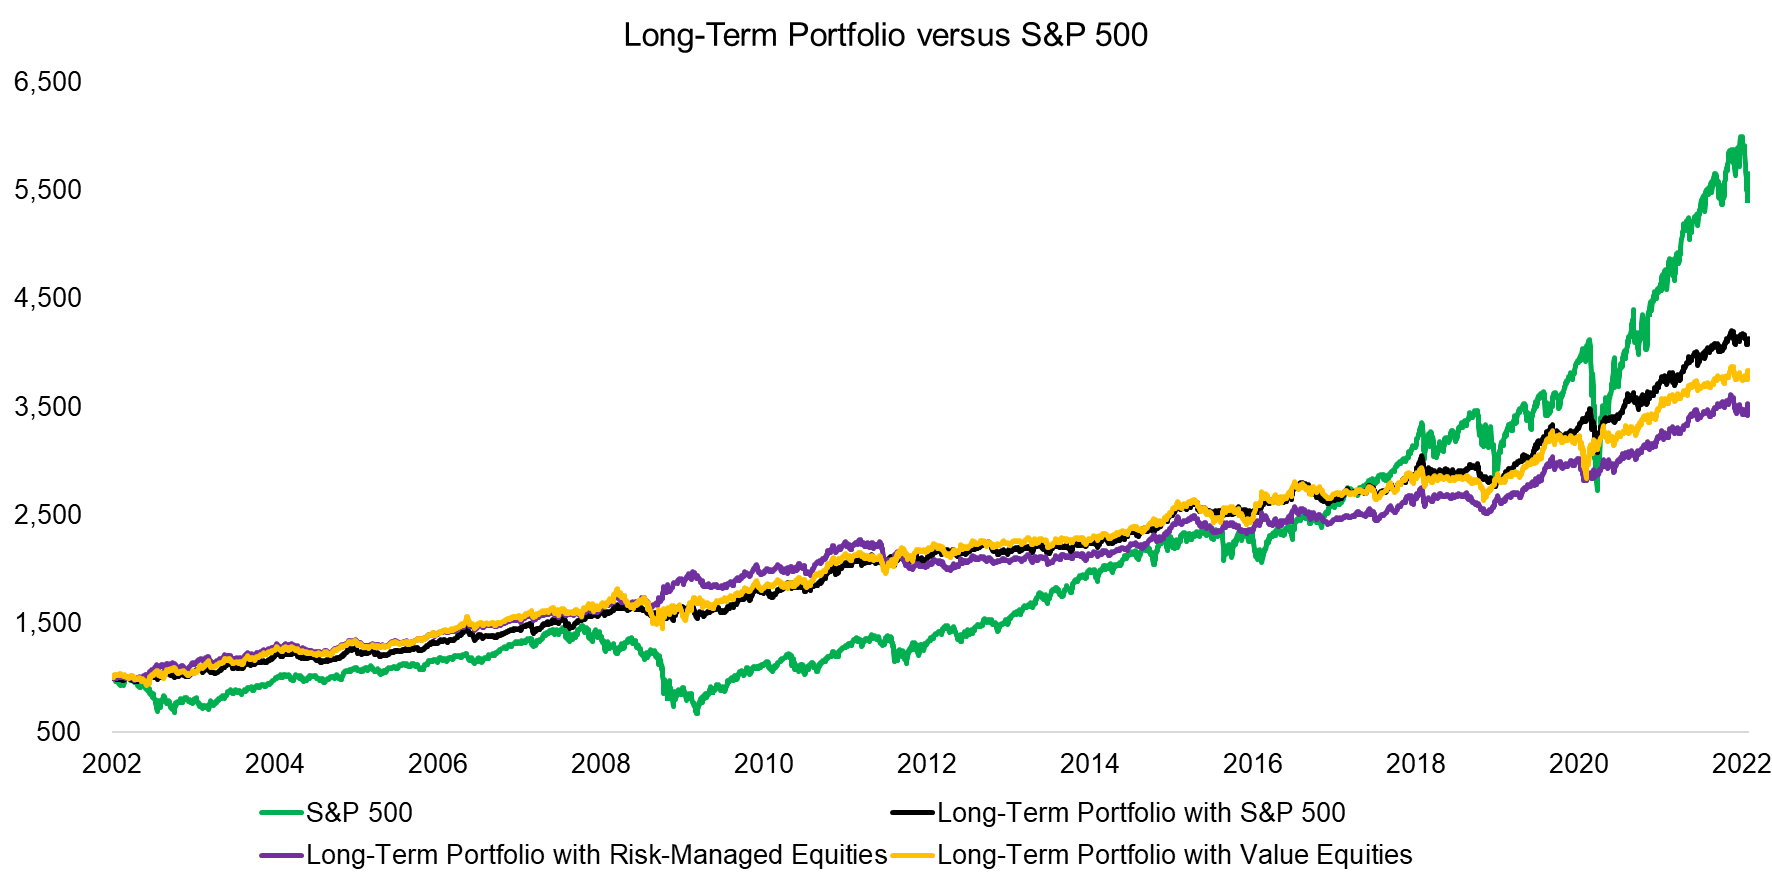 Long-Term Portfolio versus S&P 500